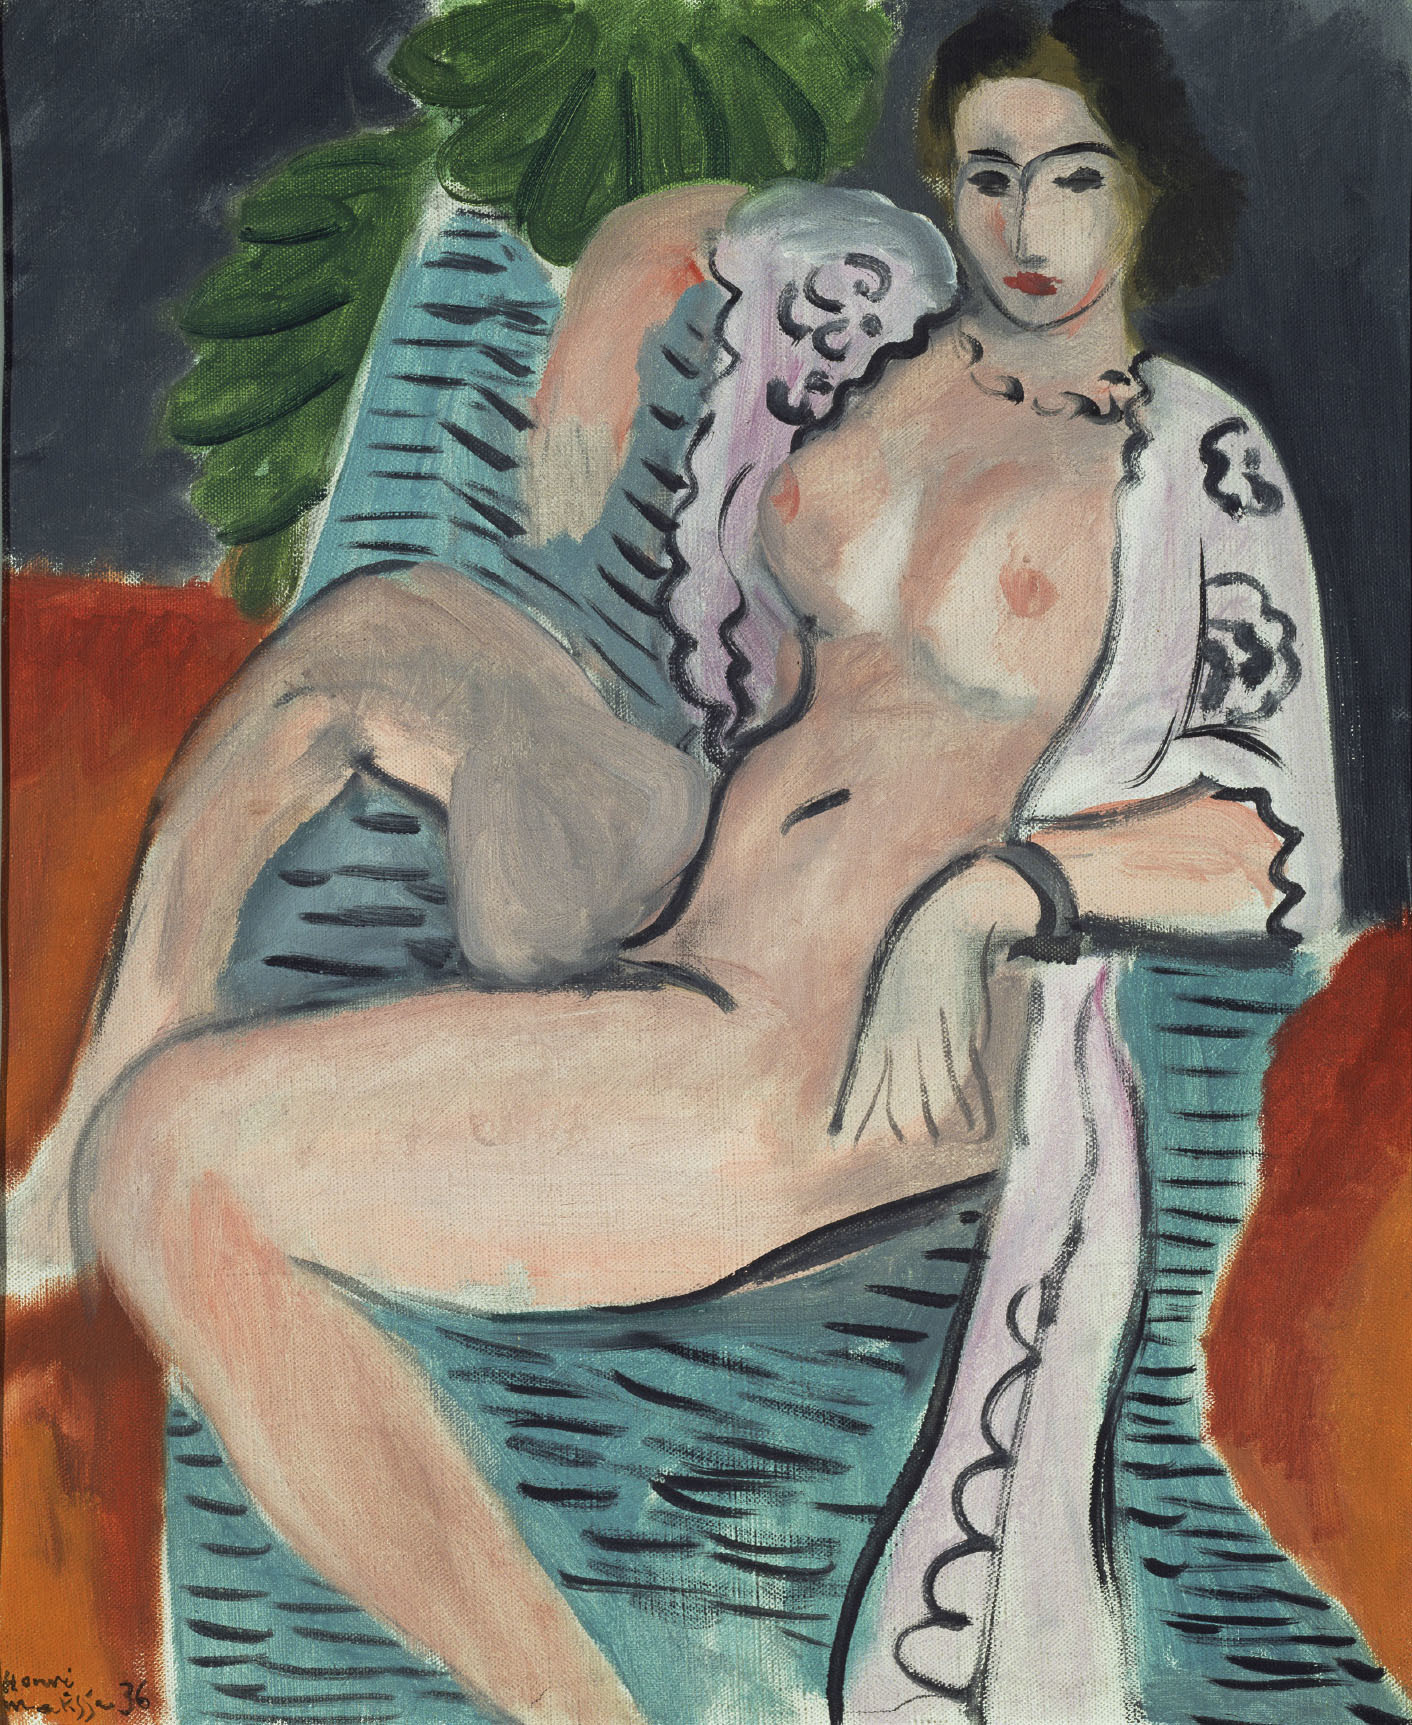 アンリ・マティス 《布をまとう裸婦》 1936年 油彩／カンヴァス 45.7×37.5cm Tate: Purchased 1959, image © Tate, London 2017